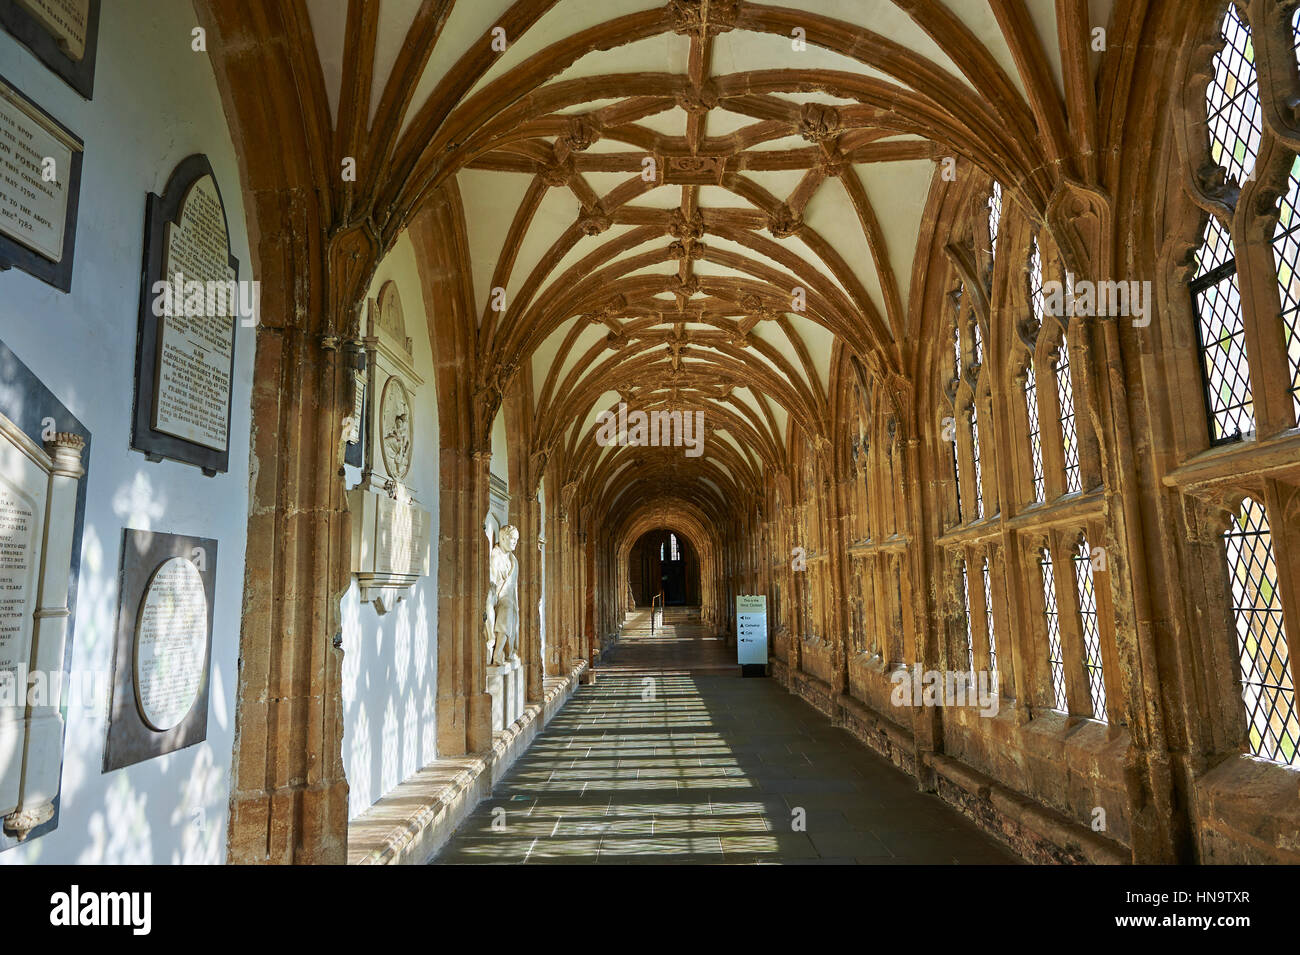 Le couloir du puits médiéval cathédrale construite au début du style gothique anglais en 1175, Wells, Somerset, Angleterre Banque D'Images